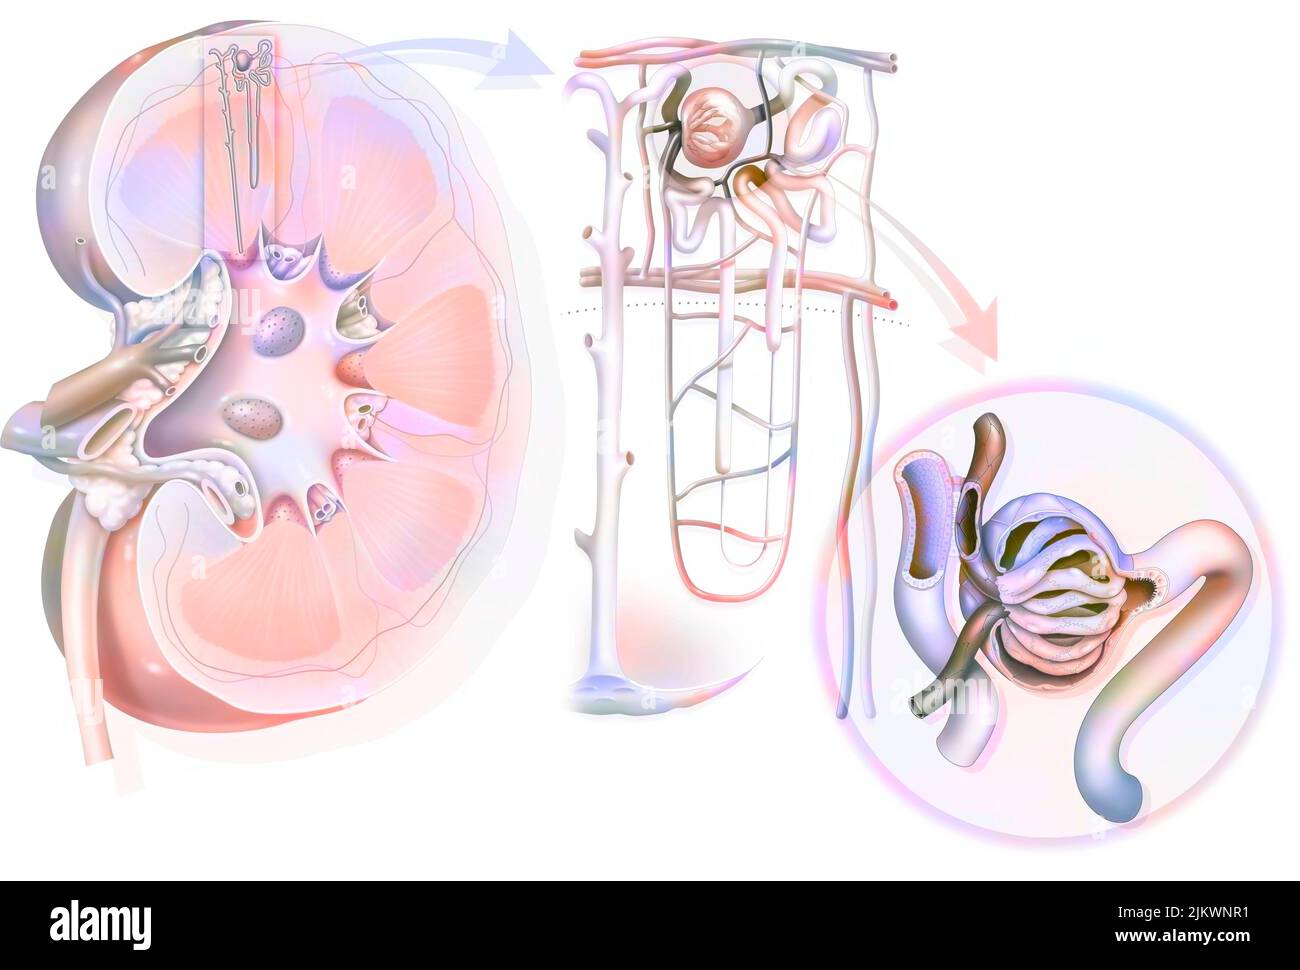 Harnsystem von der Niere bis zum Glomerulus mit Strukturen von Niere und Harnleiter. Stockfoto